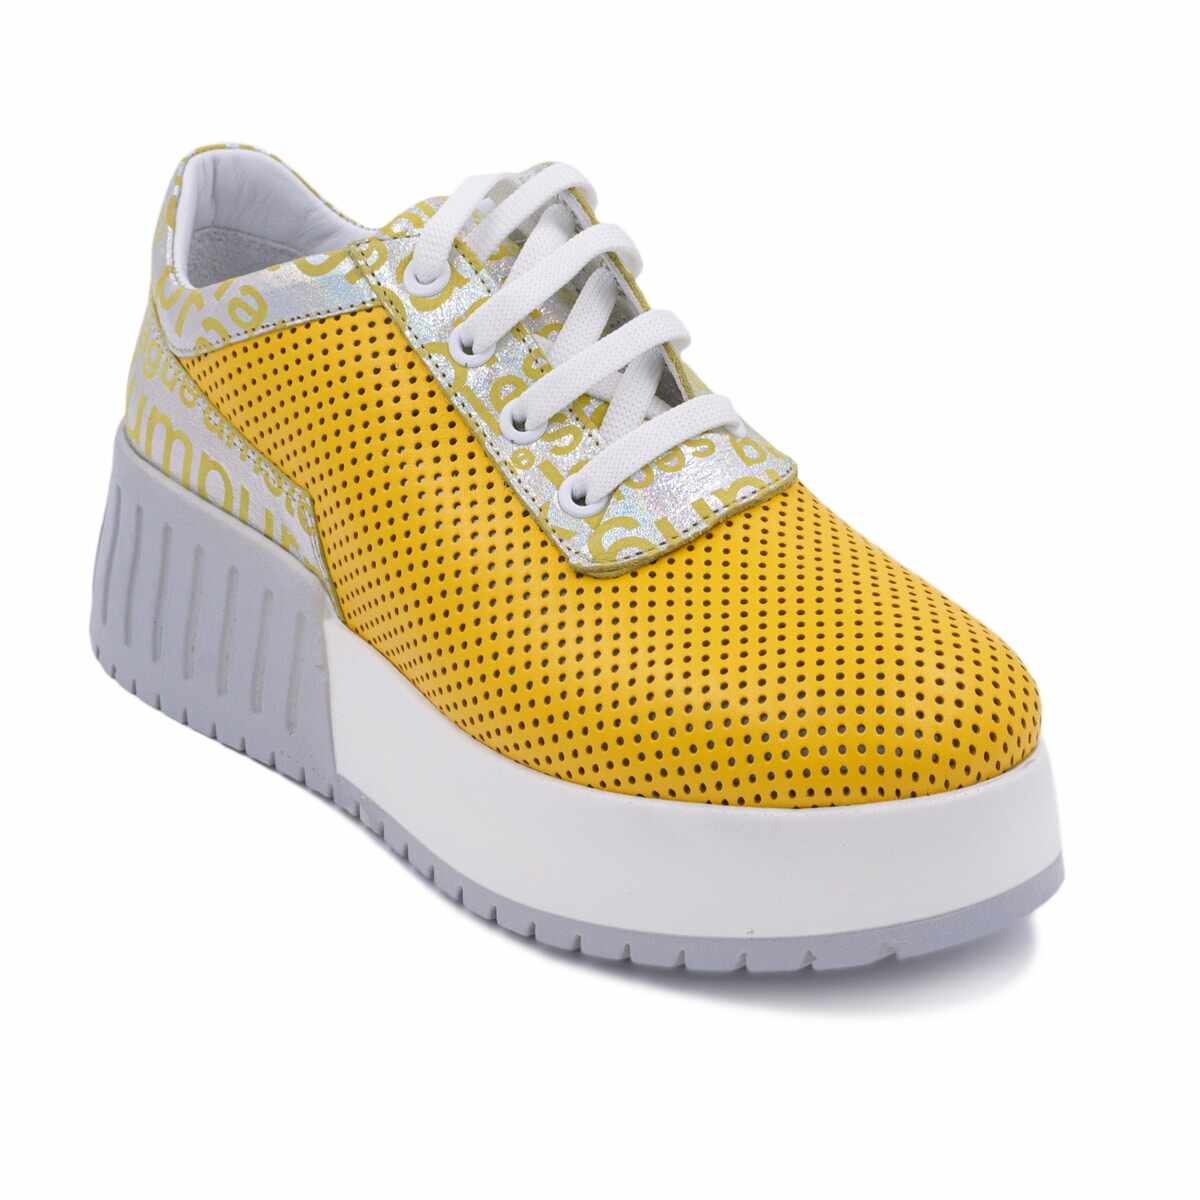 Ligation Misery Syndicate Pantofi sport Culori mixte Apparel & Accessories->Shoes- 23 produse -Partea  2